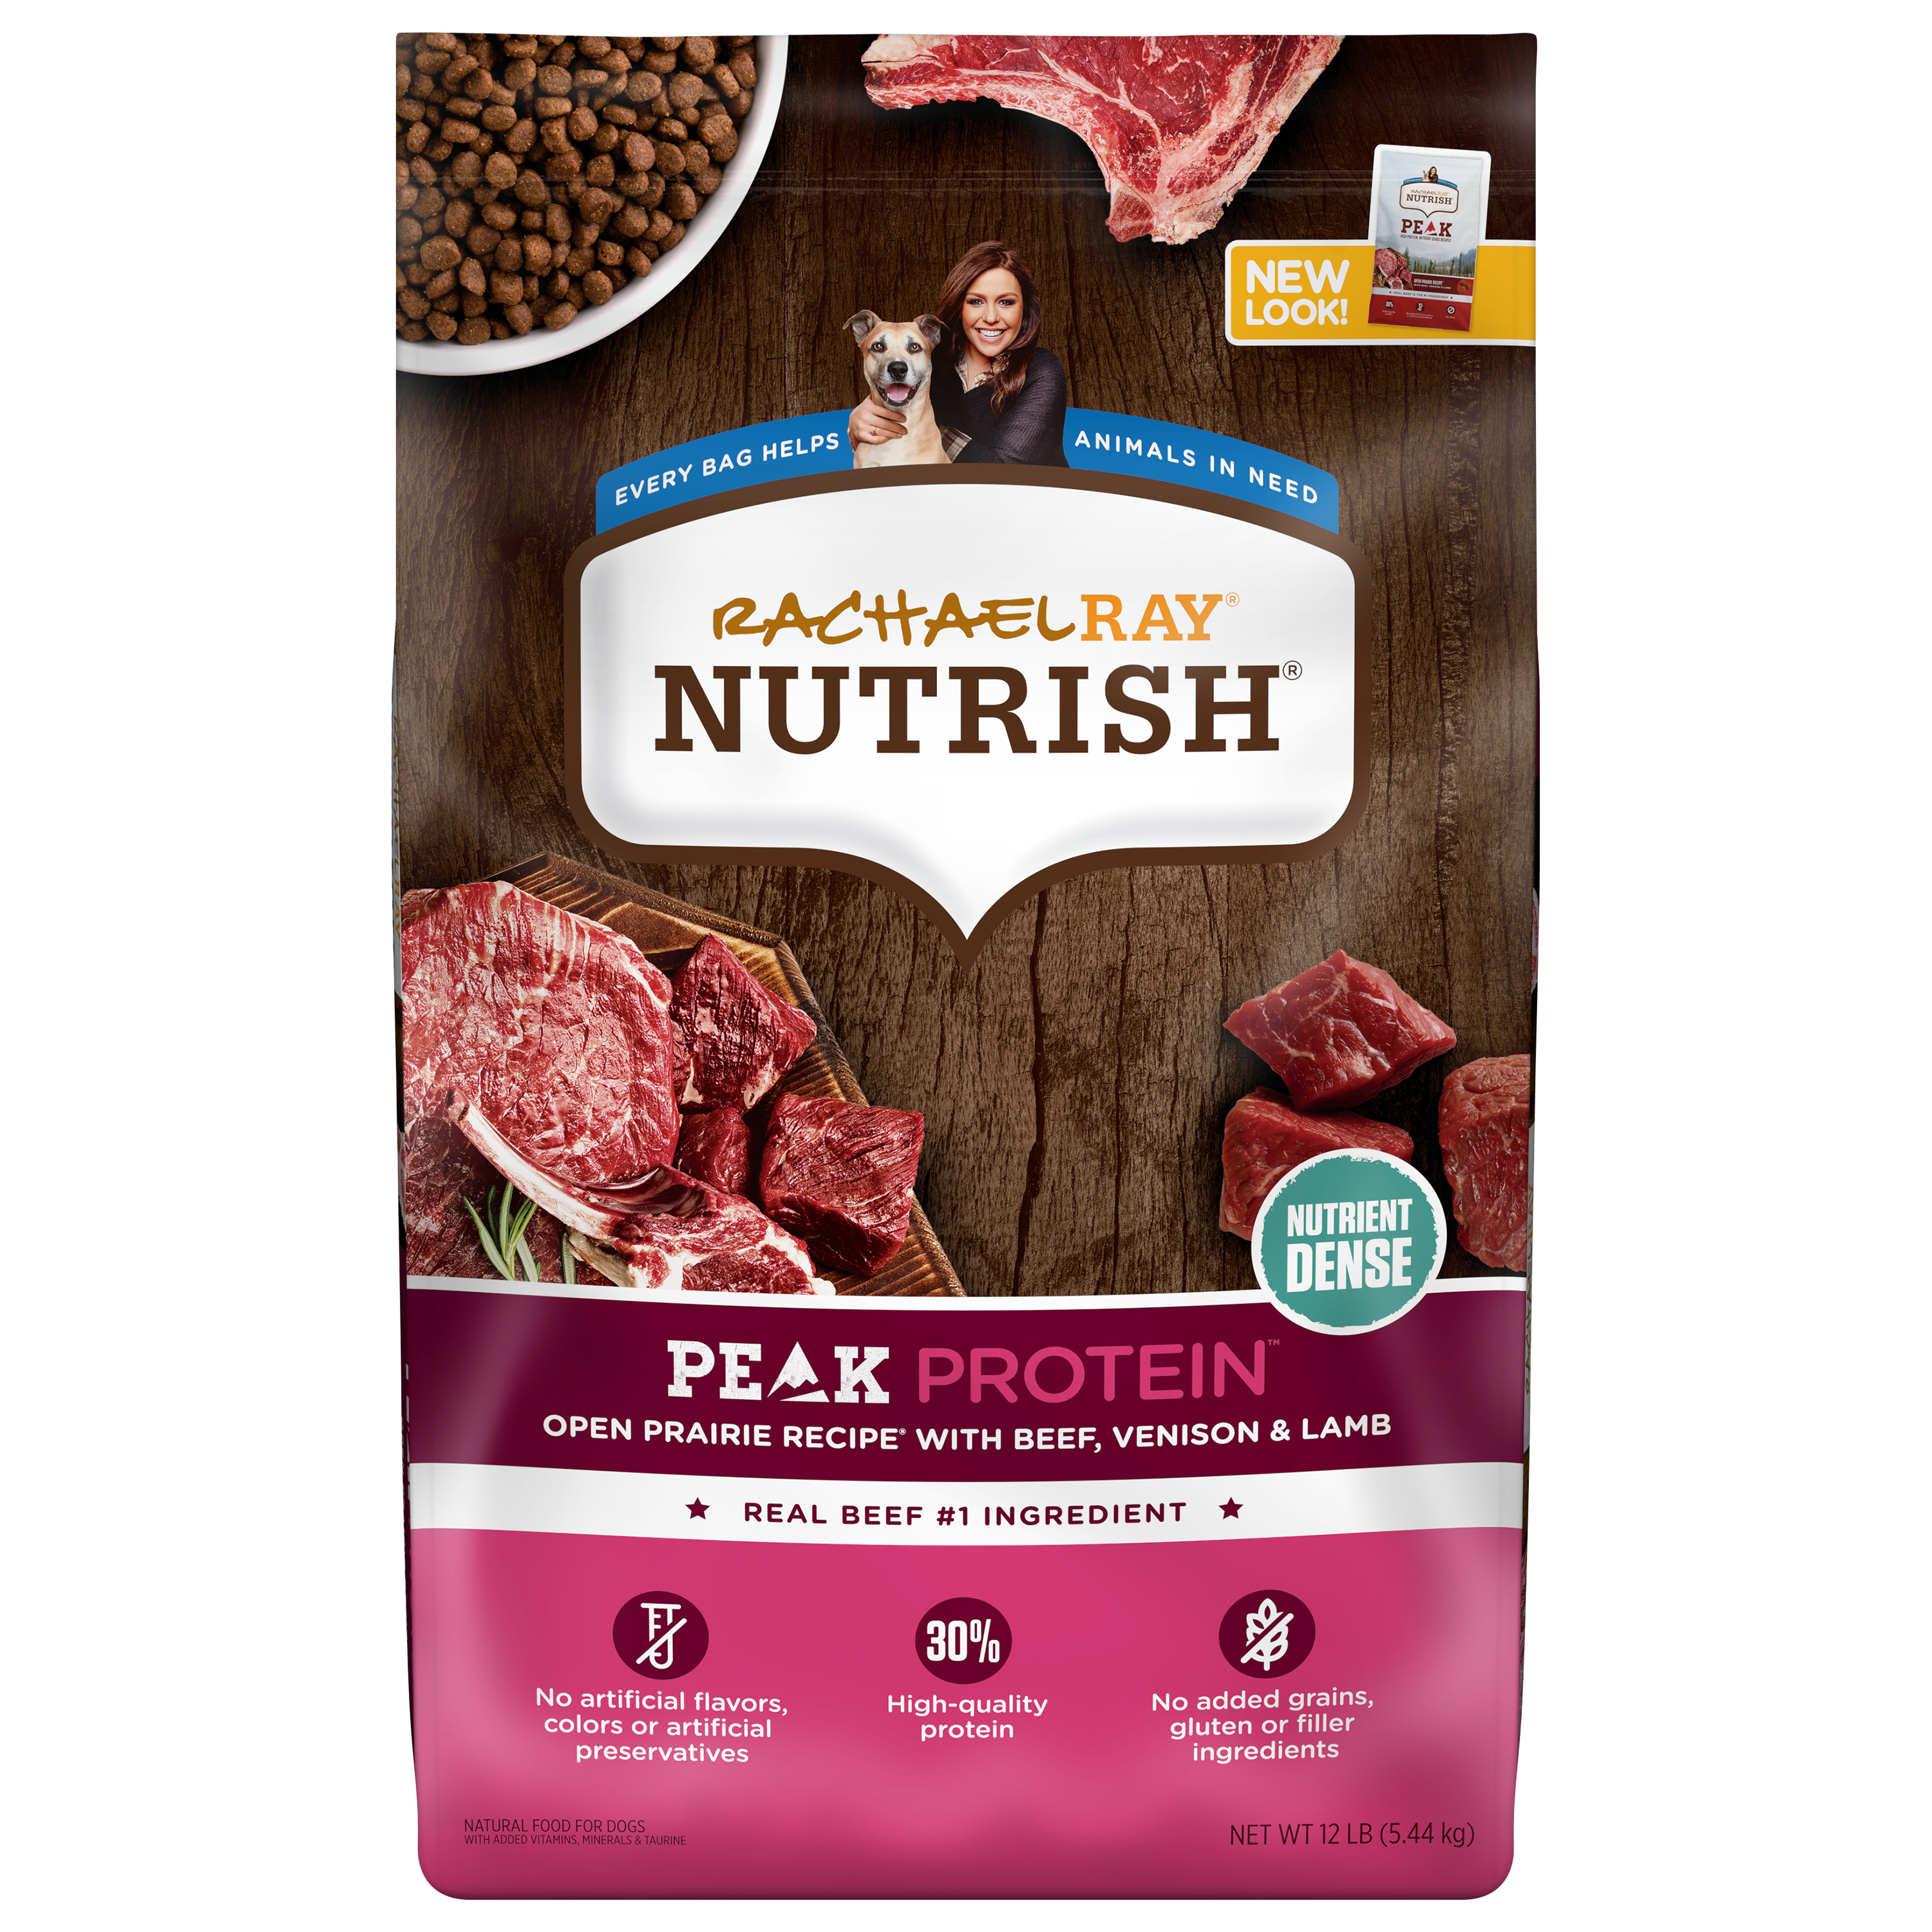 Peak&nbsp;Protein&nbsp;Open Prairie Recipe&nbsp;With&nbsp;Beef, Venison &amp; Lamb |&nbsp;Rachael Ray®&nbsp;Nutrish®
 bag